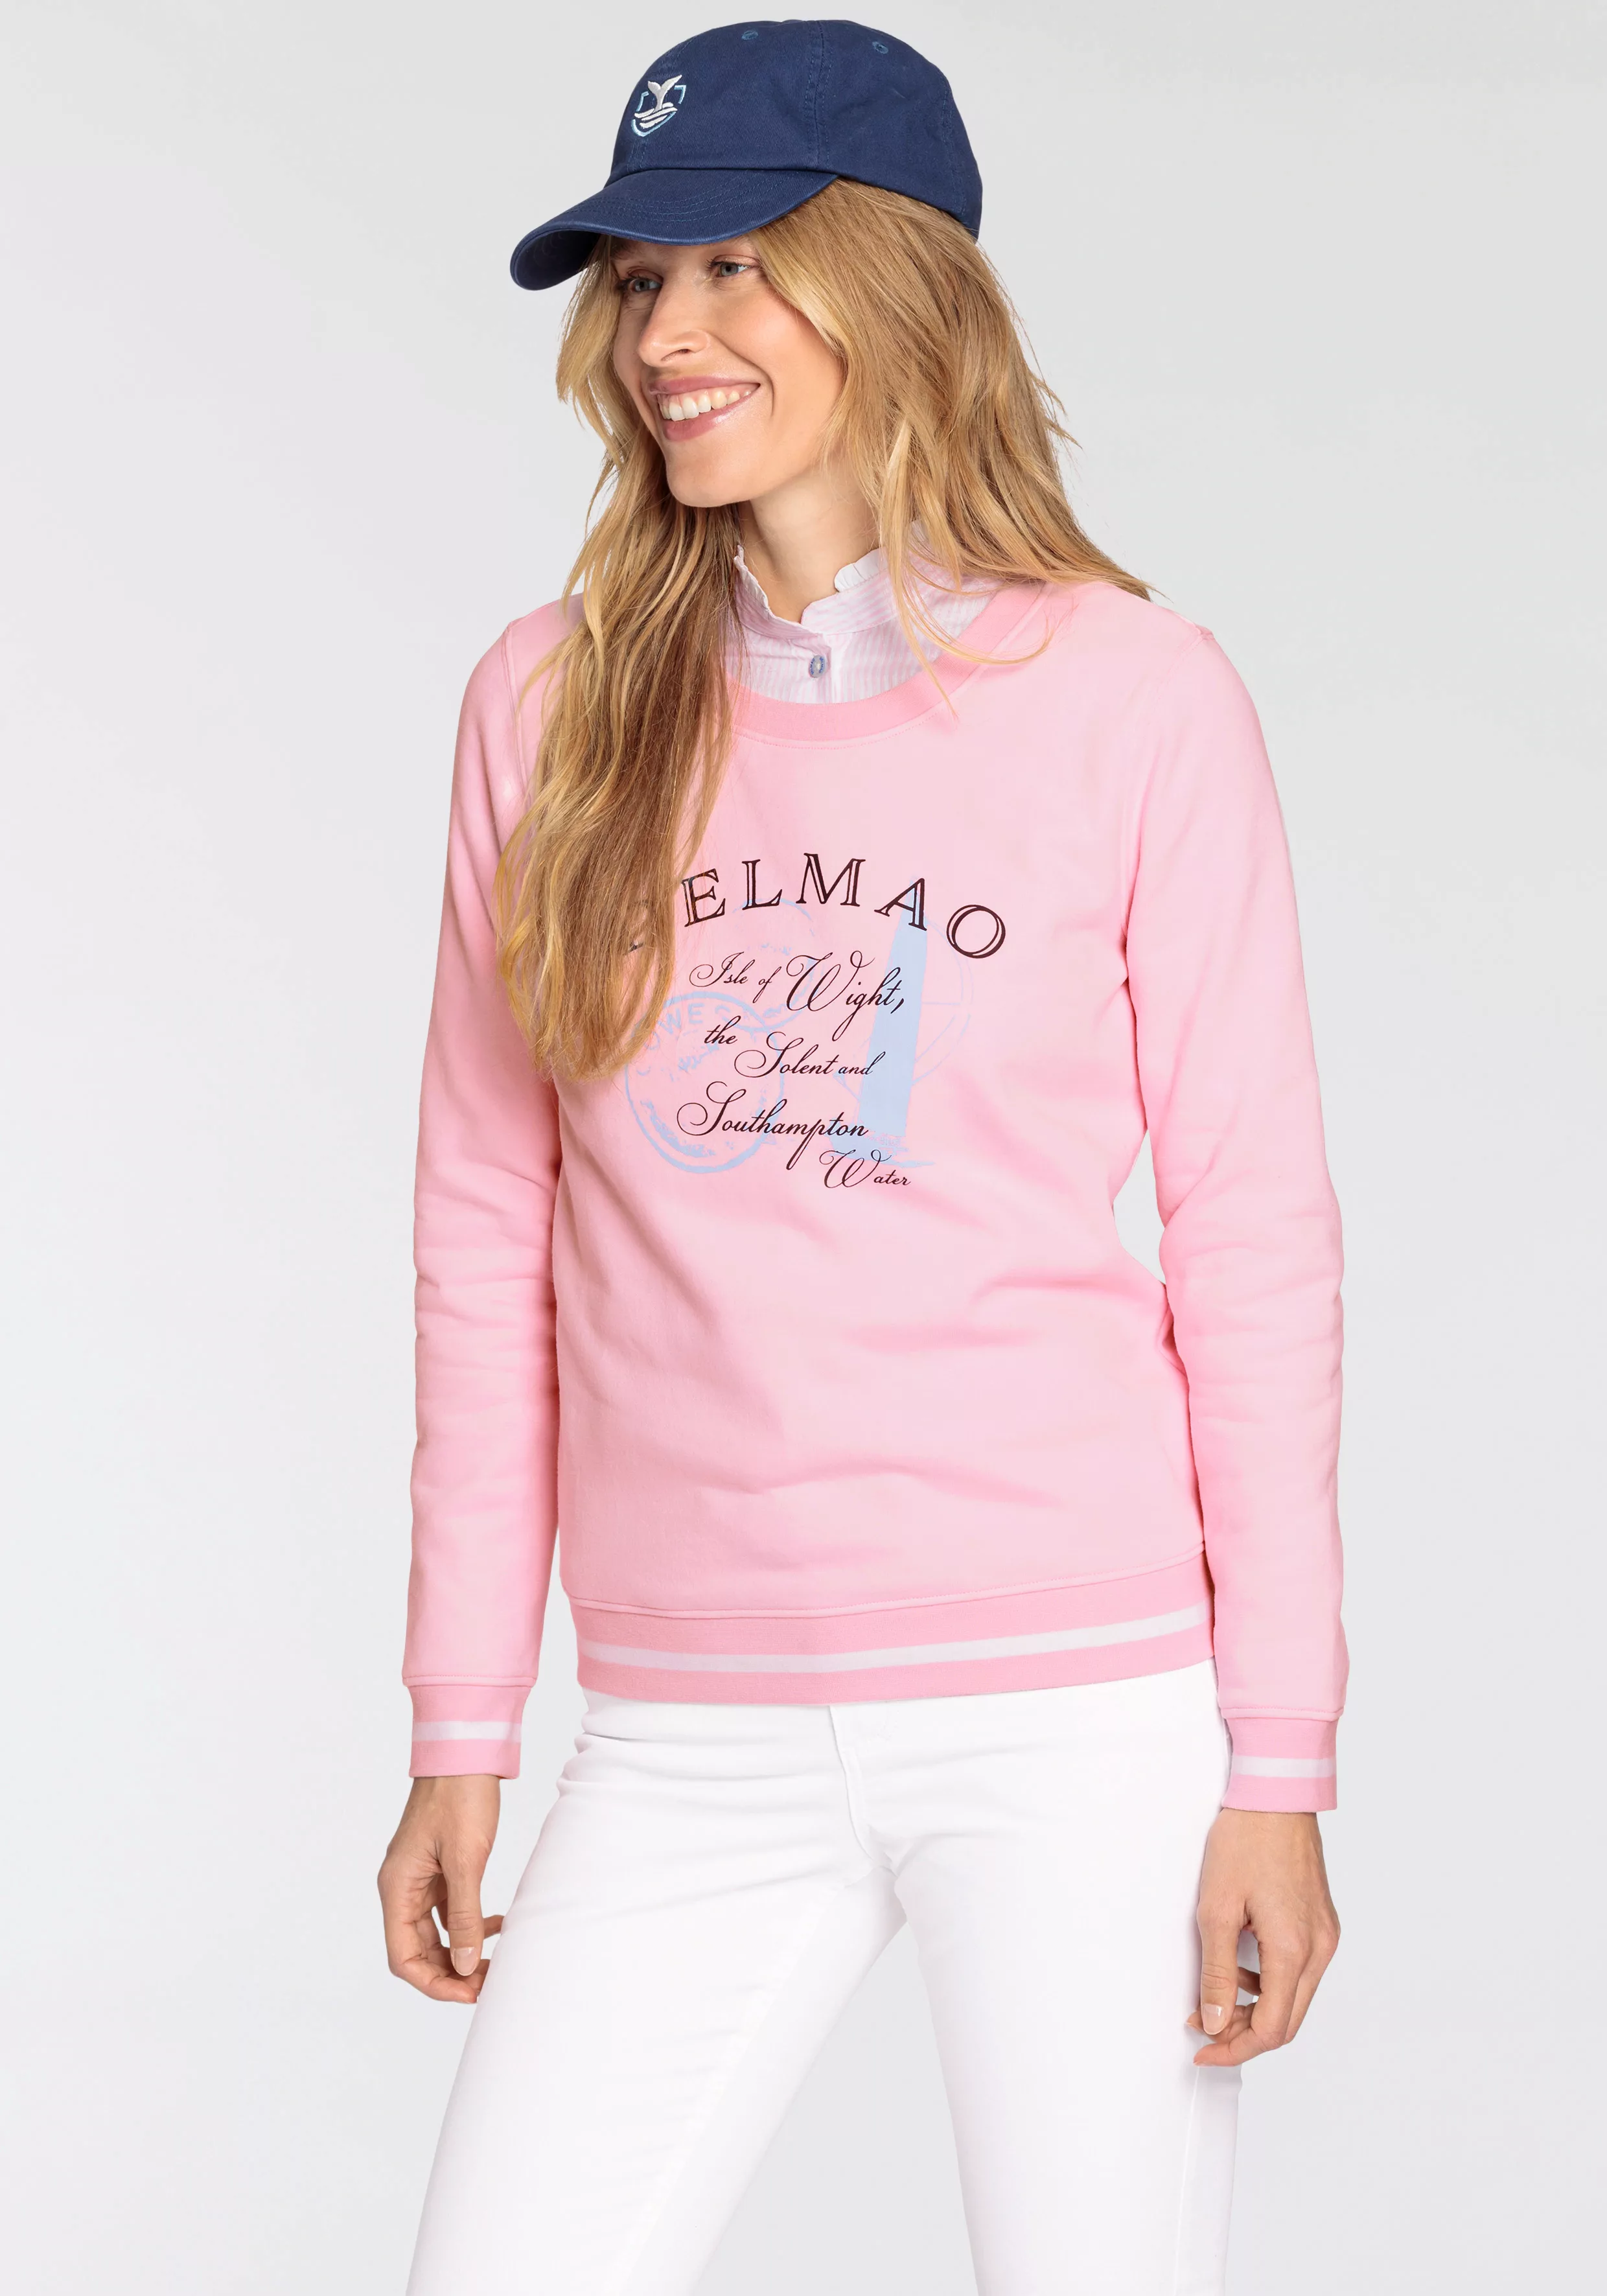 DELMAO Sweatshirt mit sportiven Kontraststreifen in den Bündchen günstig online kaufen